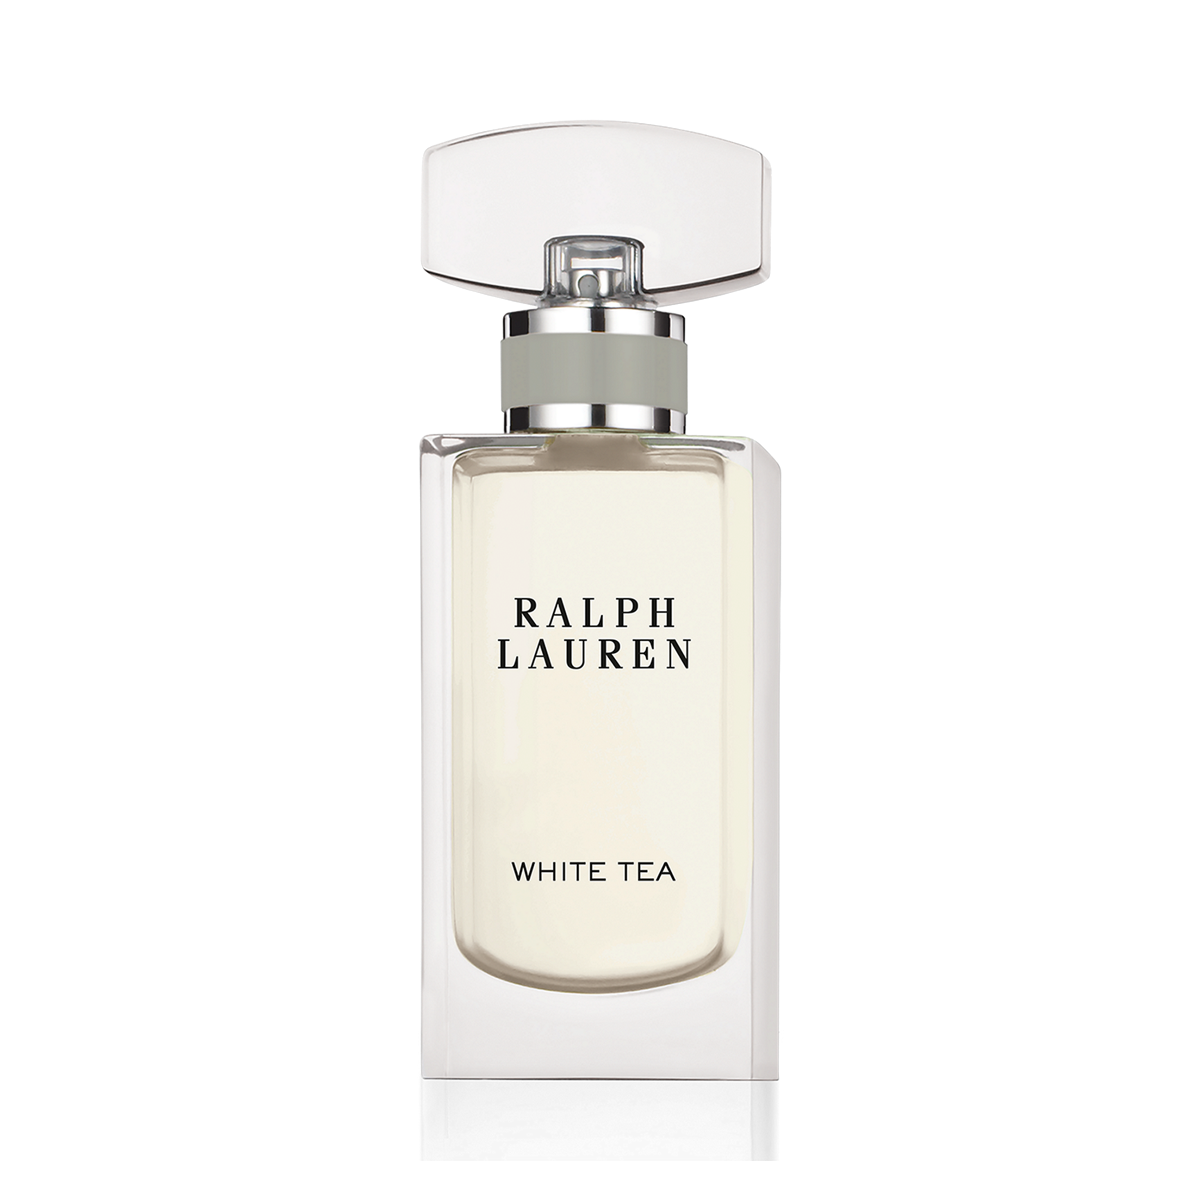 White Tea 100 ml. EDP | All Fragrance Scents for Her | Ralph Lauren